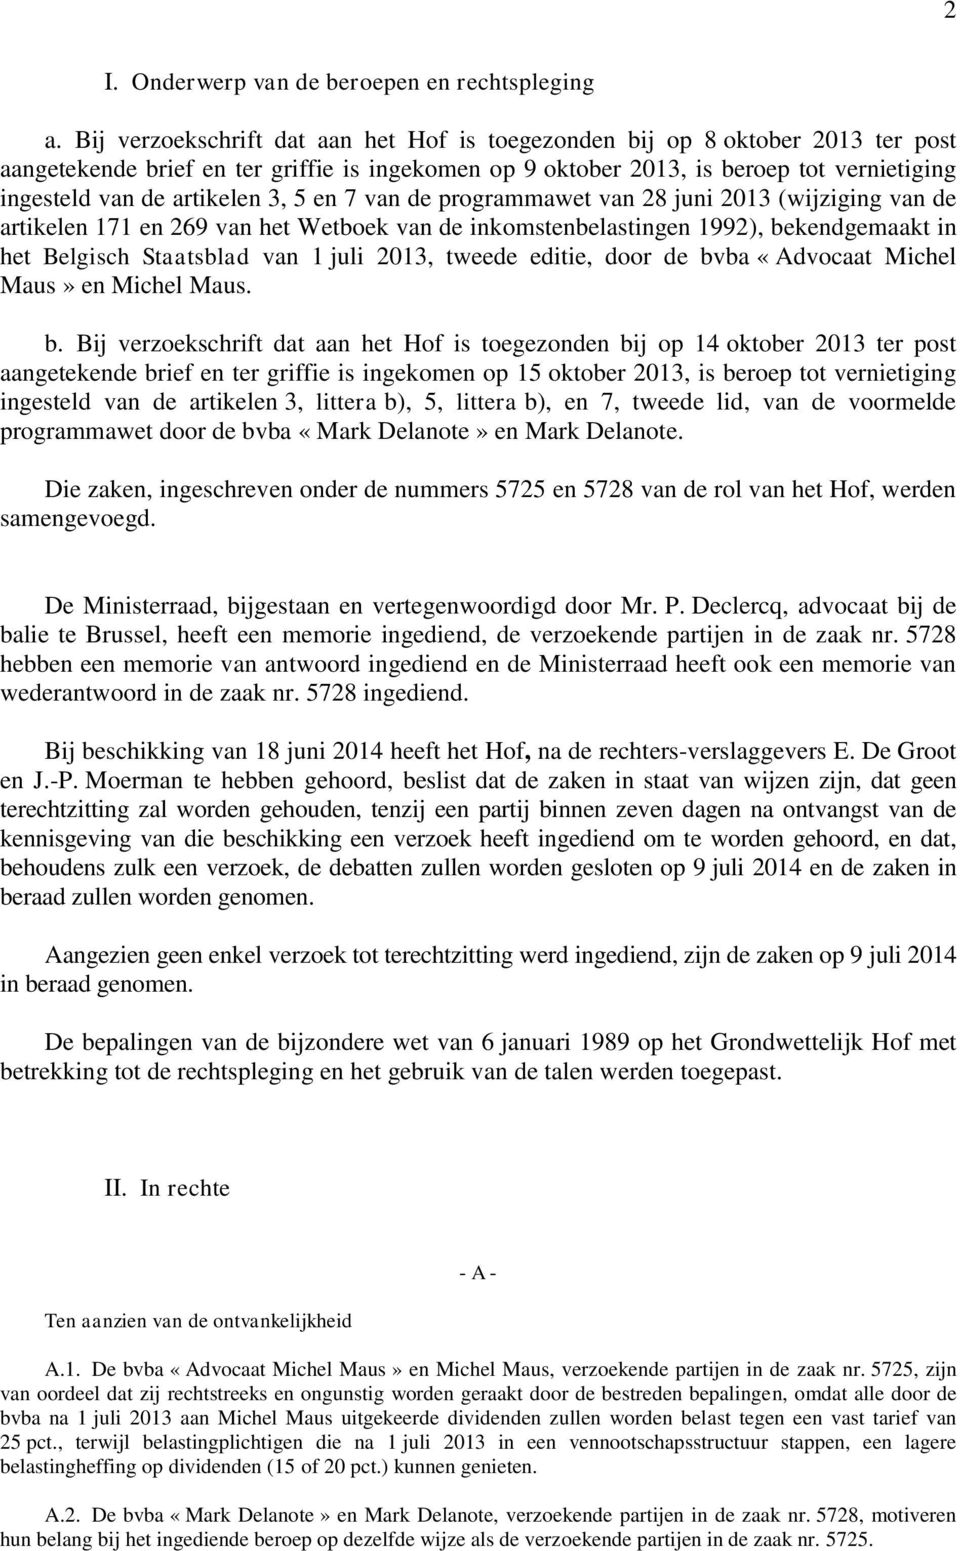 artikelen 3, 5 en 7 van de programmawet van 28 juni 2013 (wijziging van de artikelen 171 en 269 van het Wetboek van de inkomstenbelastingen 1992), bekendgemaakt in het Belgisch Staatsblad van 1 juli